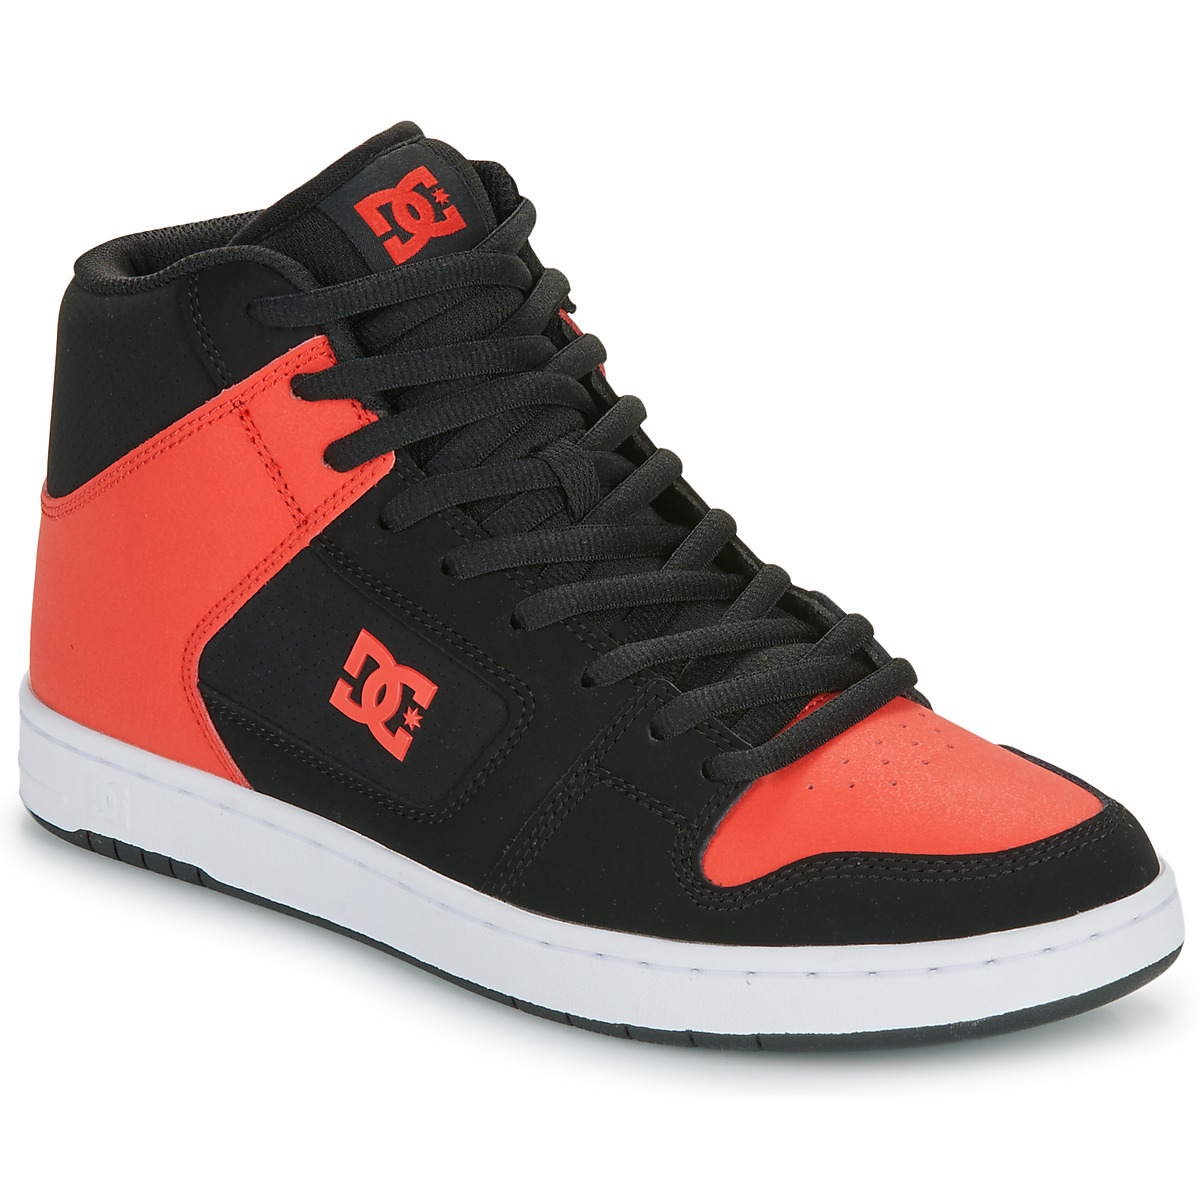 Zapatos Hombre Zapatillas altas DC Shoes MANTECA 4 HI Negro / Rojo